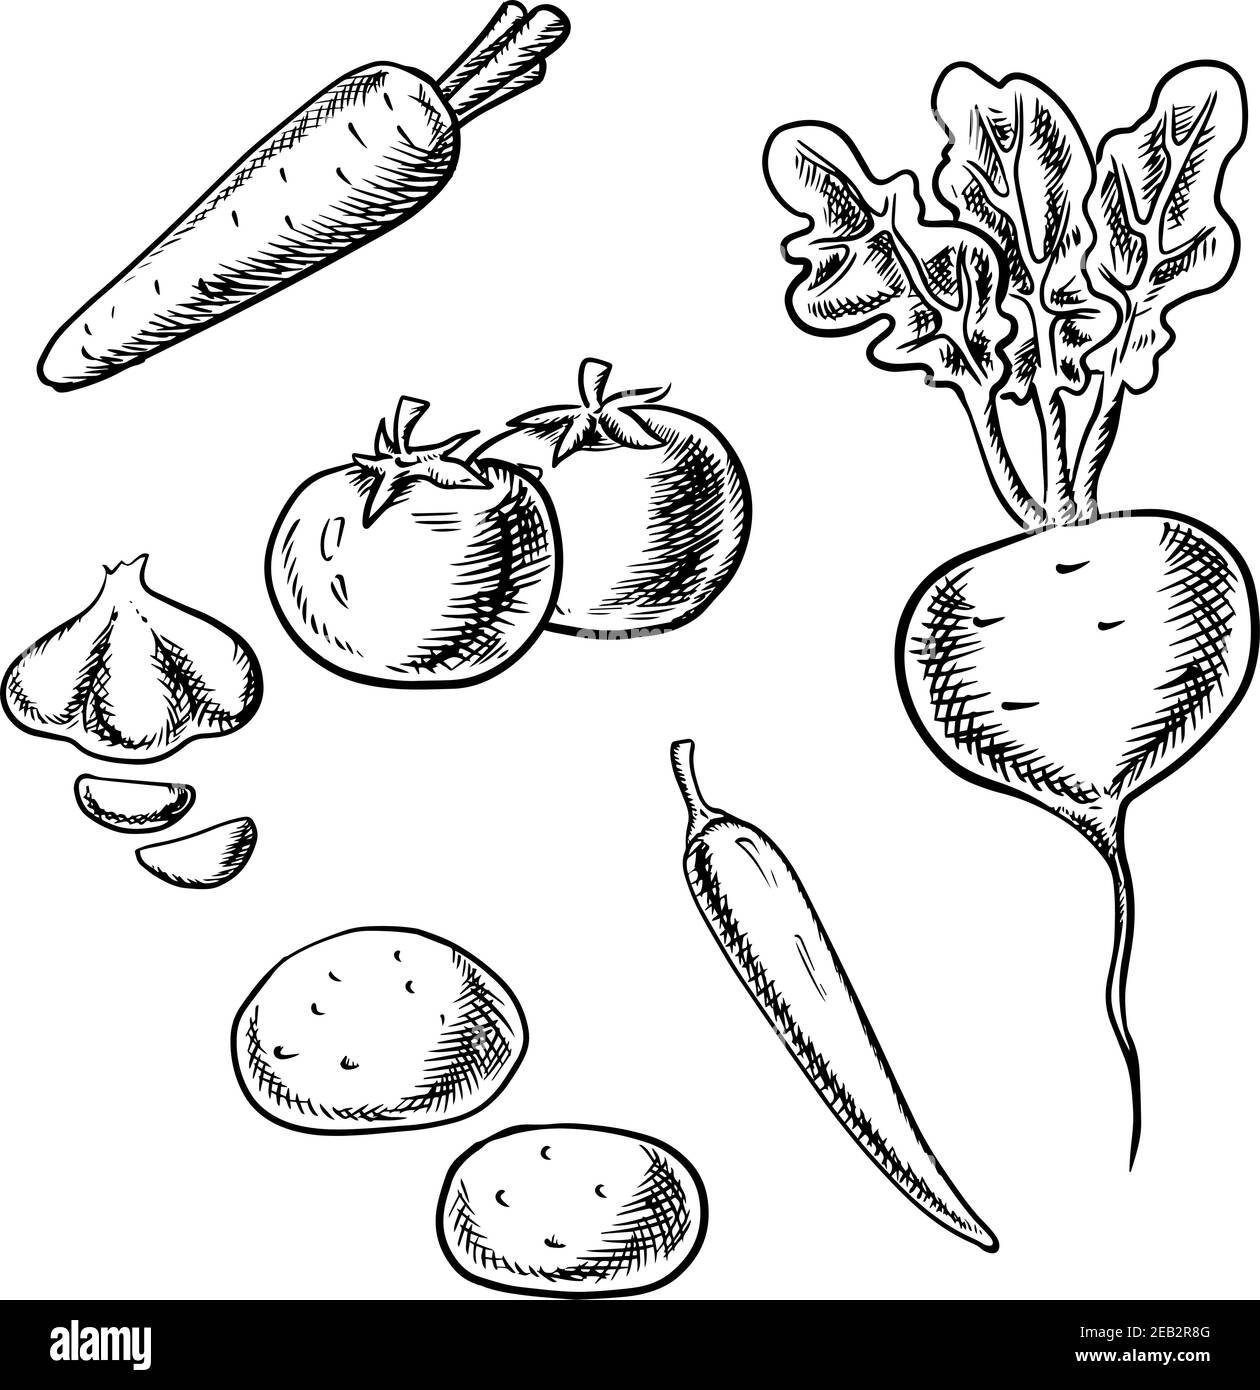 Frische gesunde Karotten, Tomaten, Rüben, Kartoffeln, Chili und Knoblauch Gemüse isoliert auf weißem Hintergrund, Skizze Design Stock Vektor